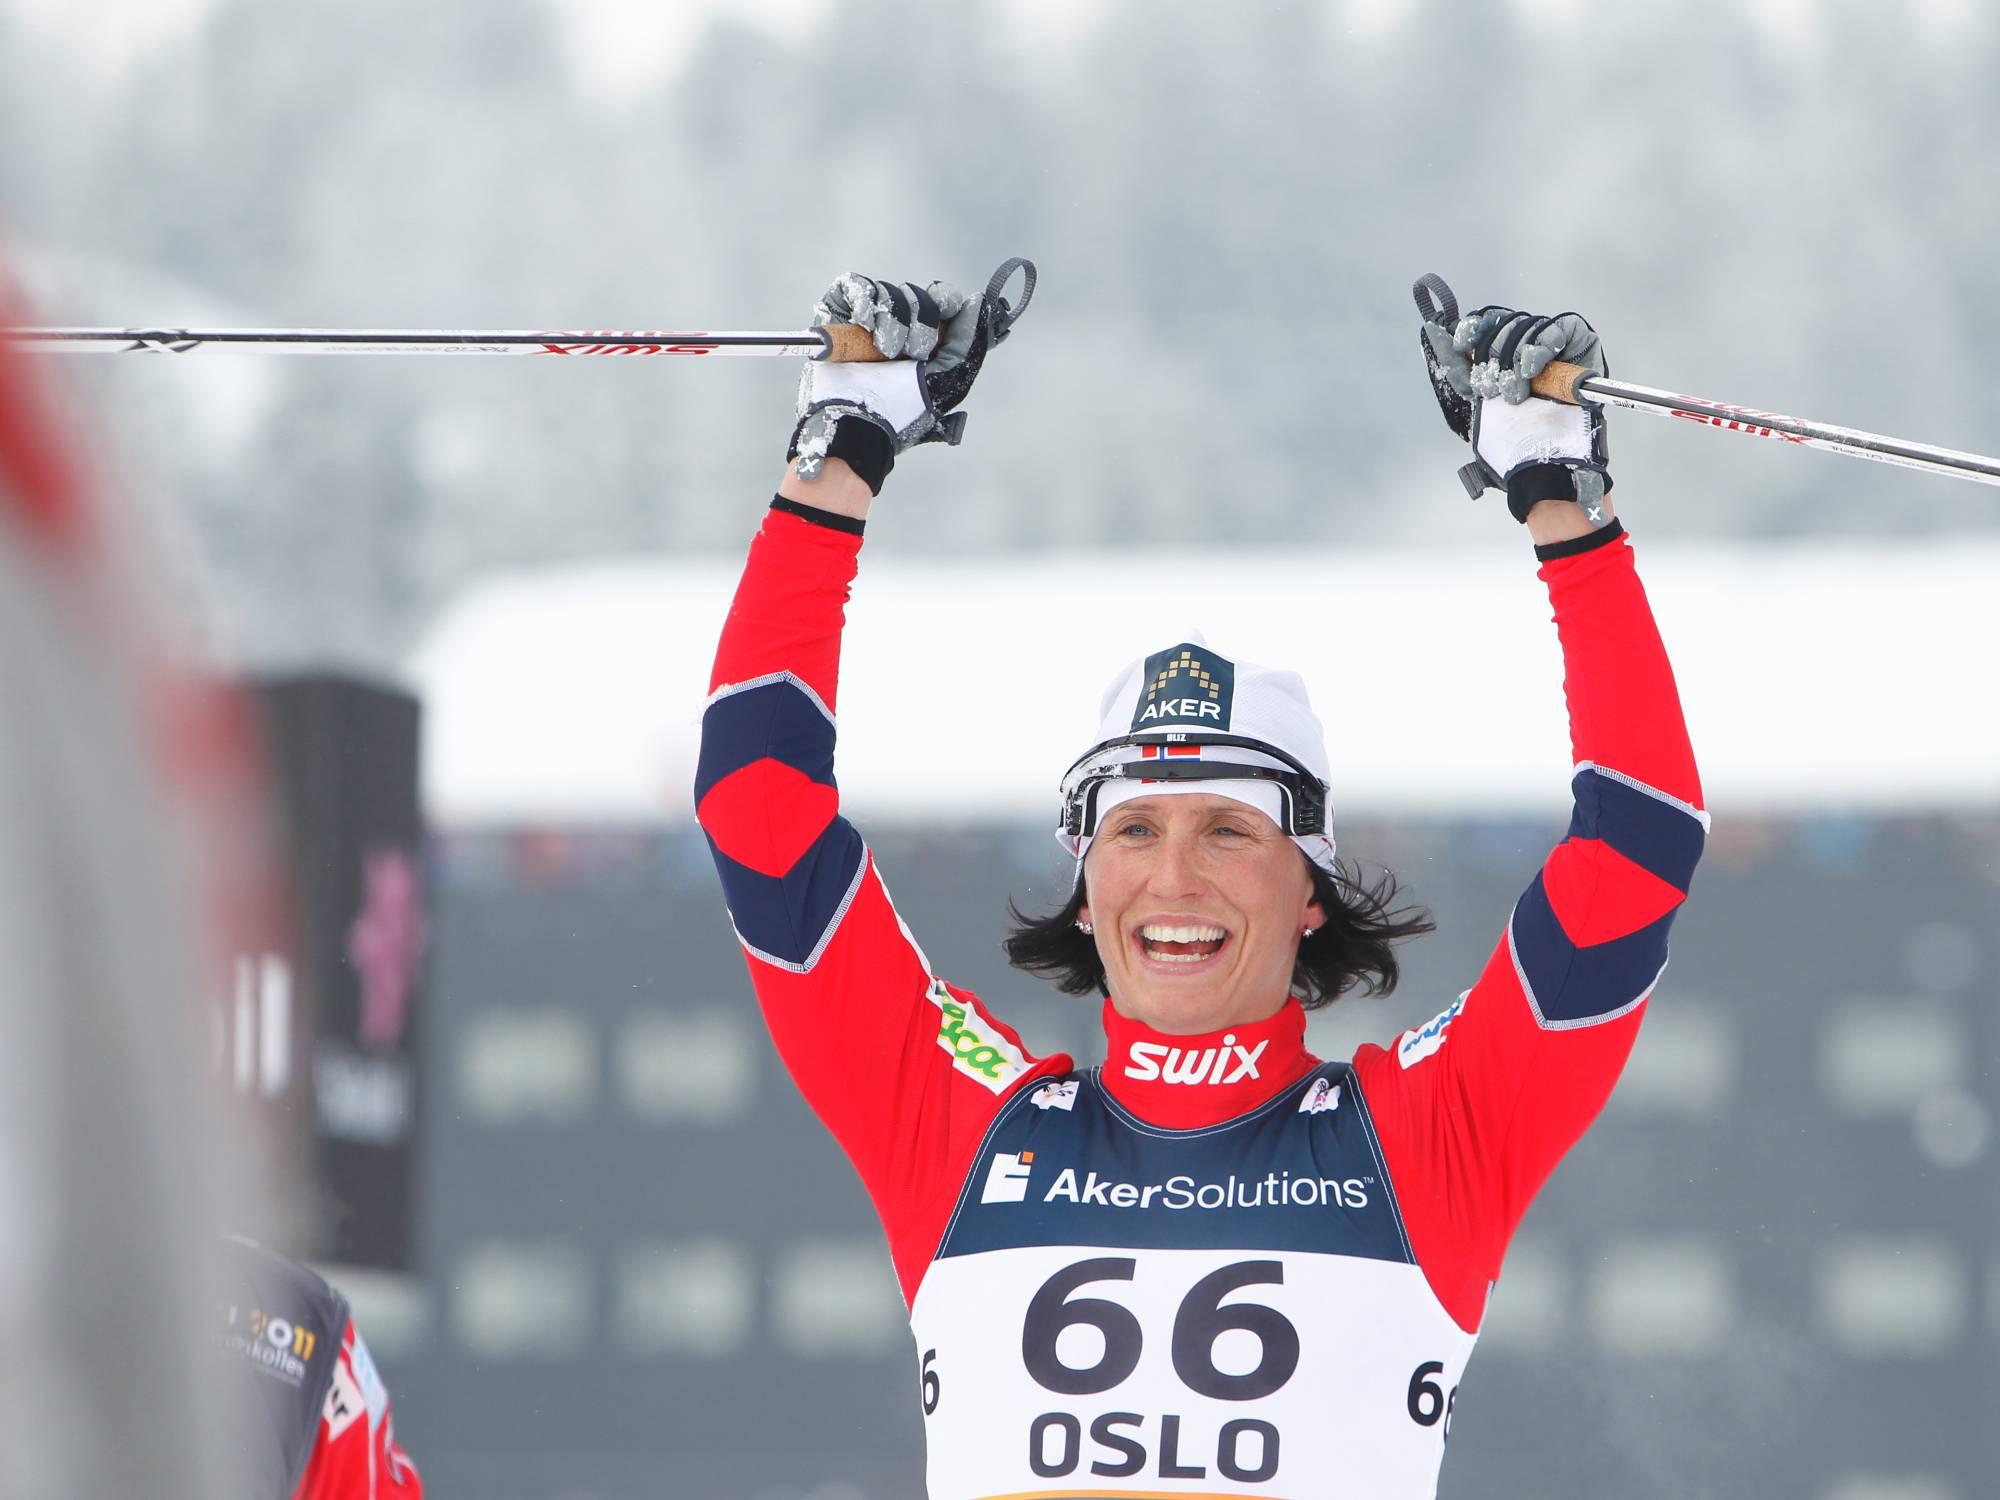 of the Nordic Ski World Championship in Oslo